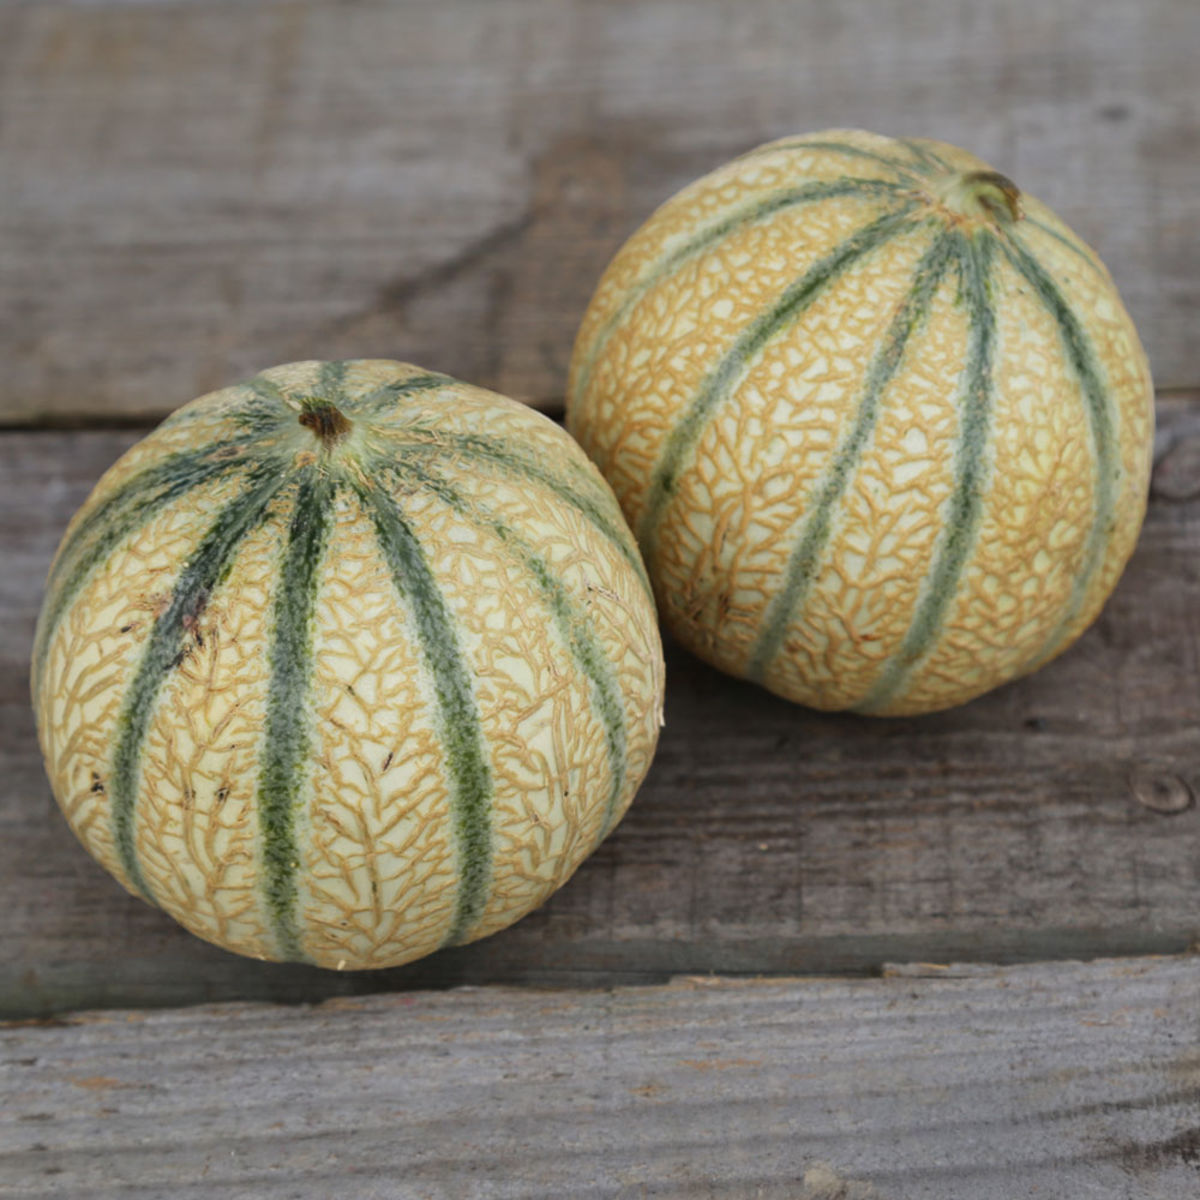 Reproductible Bio 15 Graines de Melon Charentais Jaune